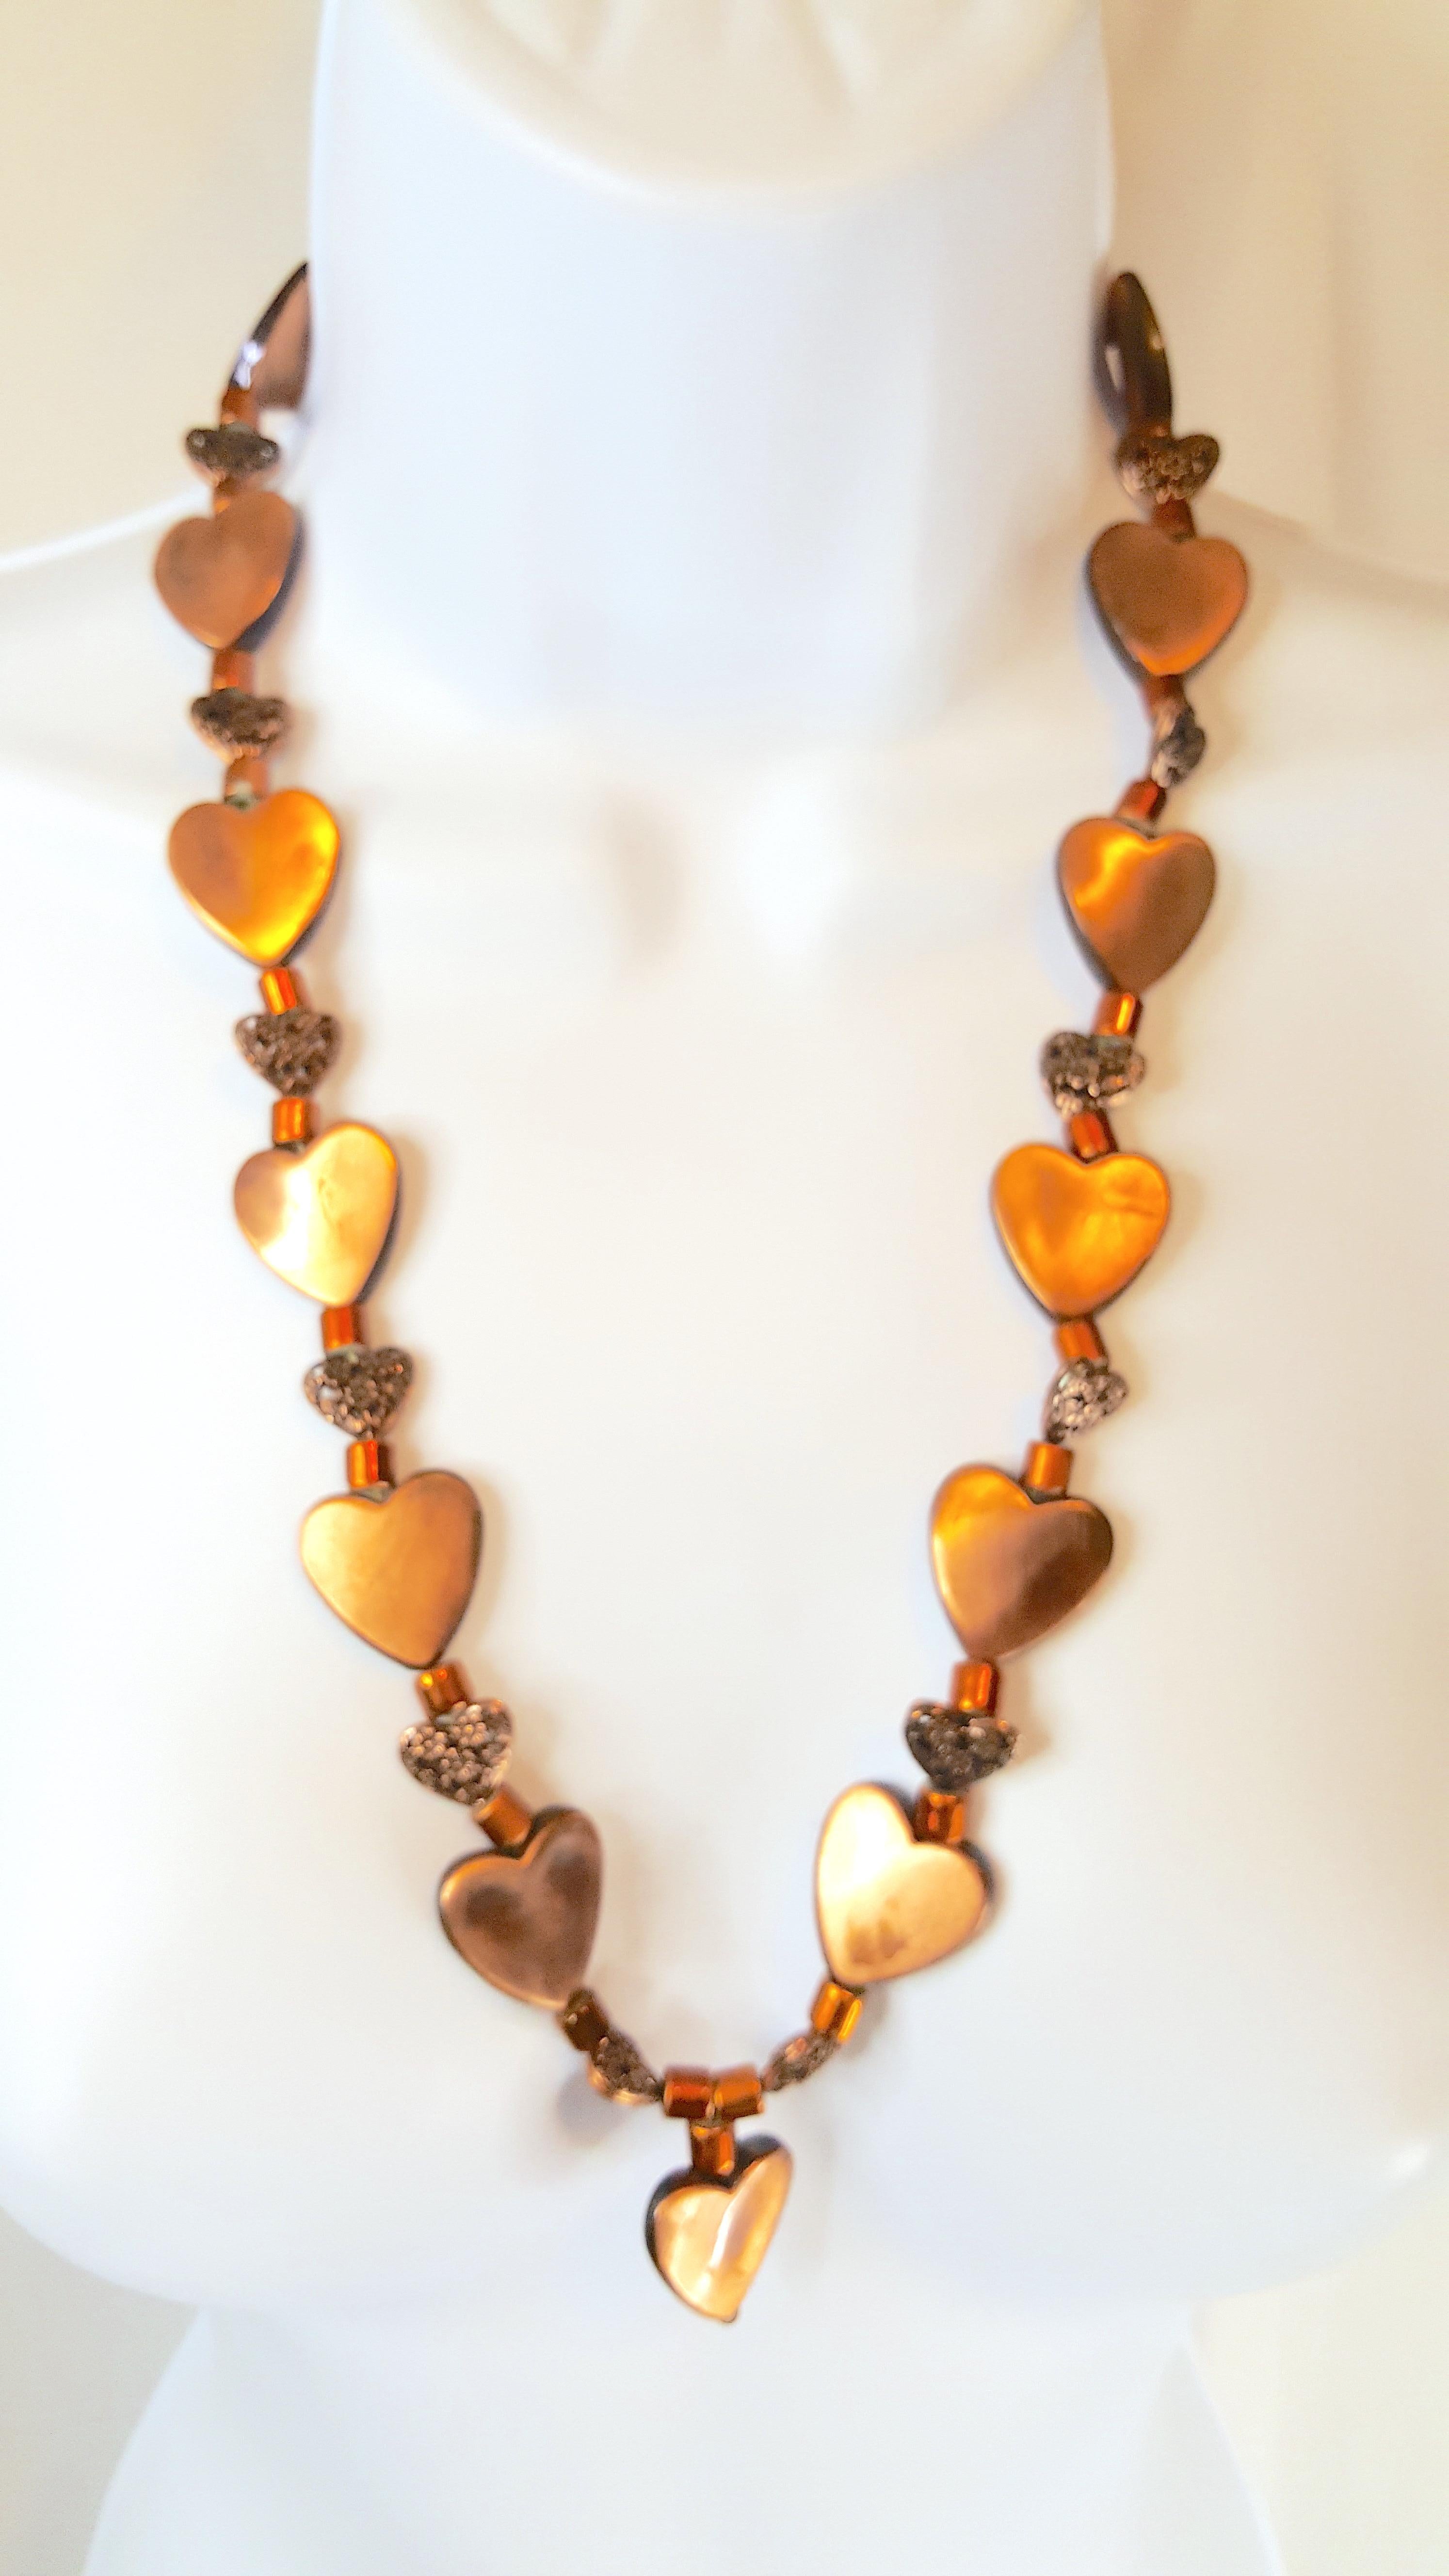 Les premiers motifs de mode de Chanel, camélias, cœurs et topazes, sont combinés dans cet ensemble de couture Art-Déco, composé d'un collier sautoir en perles mixtes et d'un bracelet tissé, étroitement tendu de soie et de verre métallique. Outre les